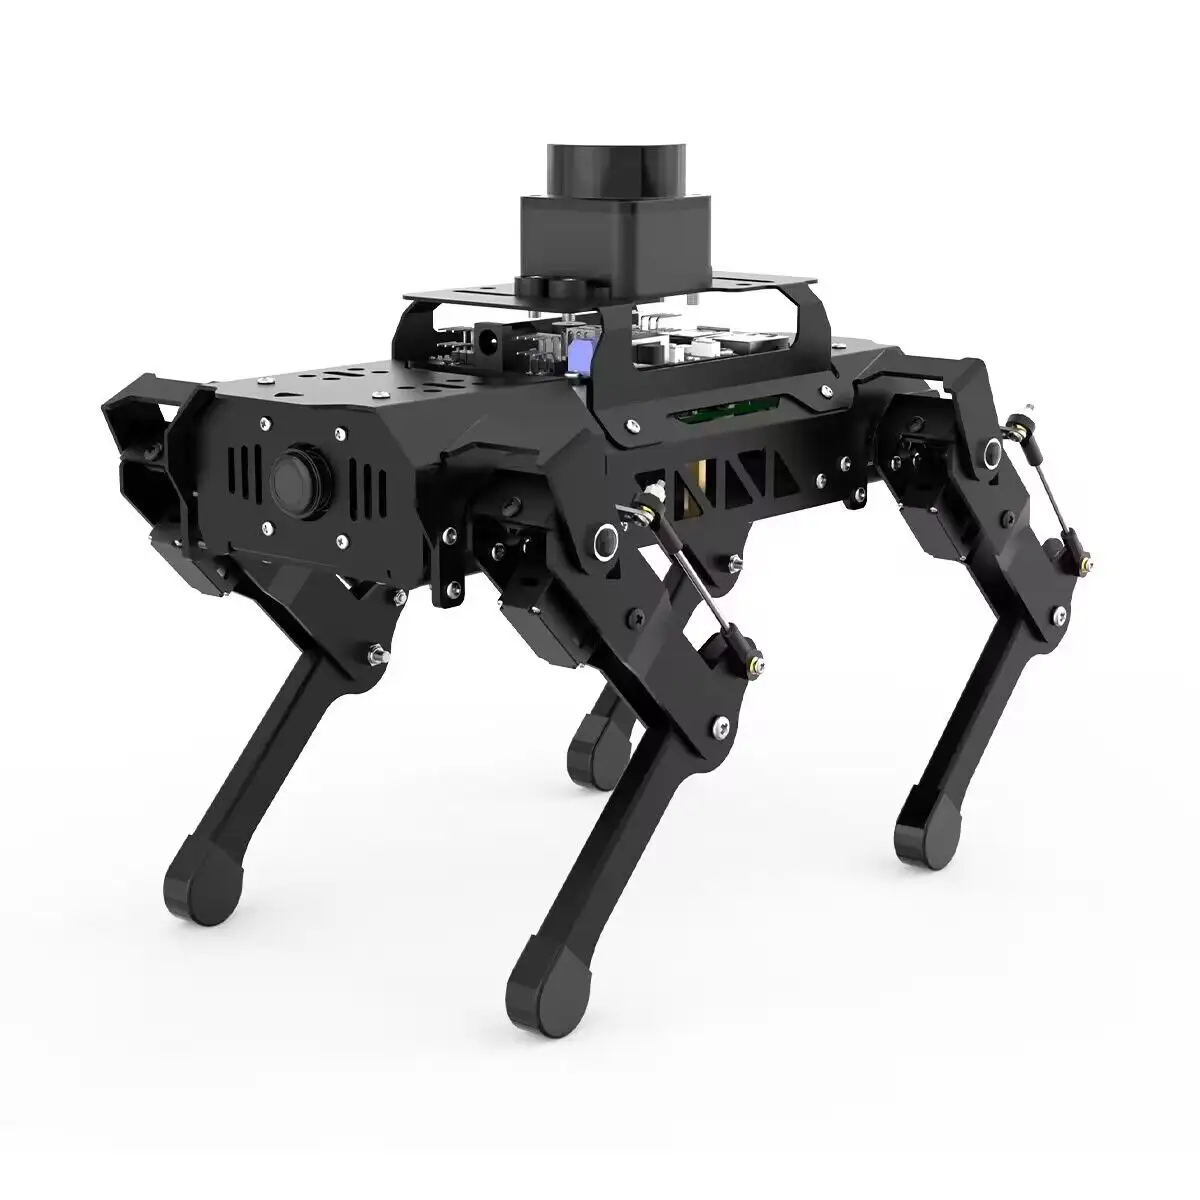 Nuovo arrivo Robot cane ad alta tecnologia basato su Raspberry Pi e Kit di programmazione Robot ROS supporta la mappatura e la navigazione